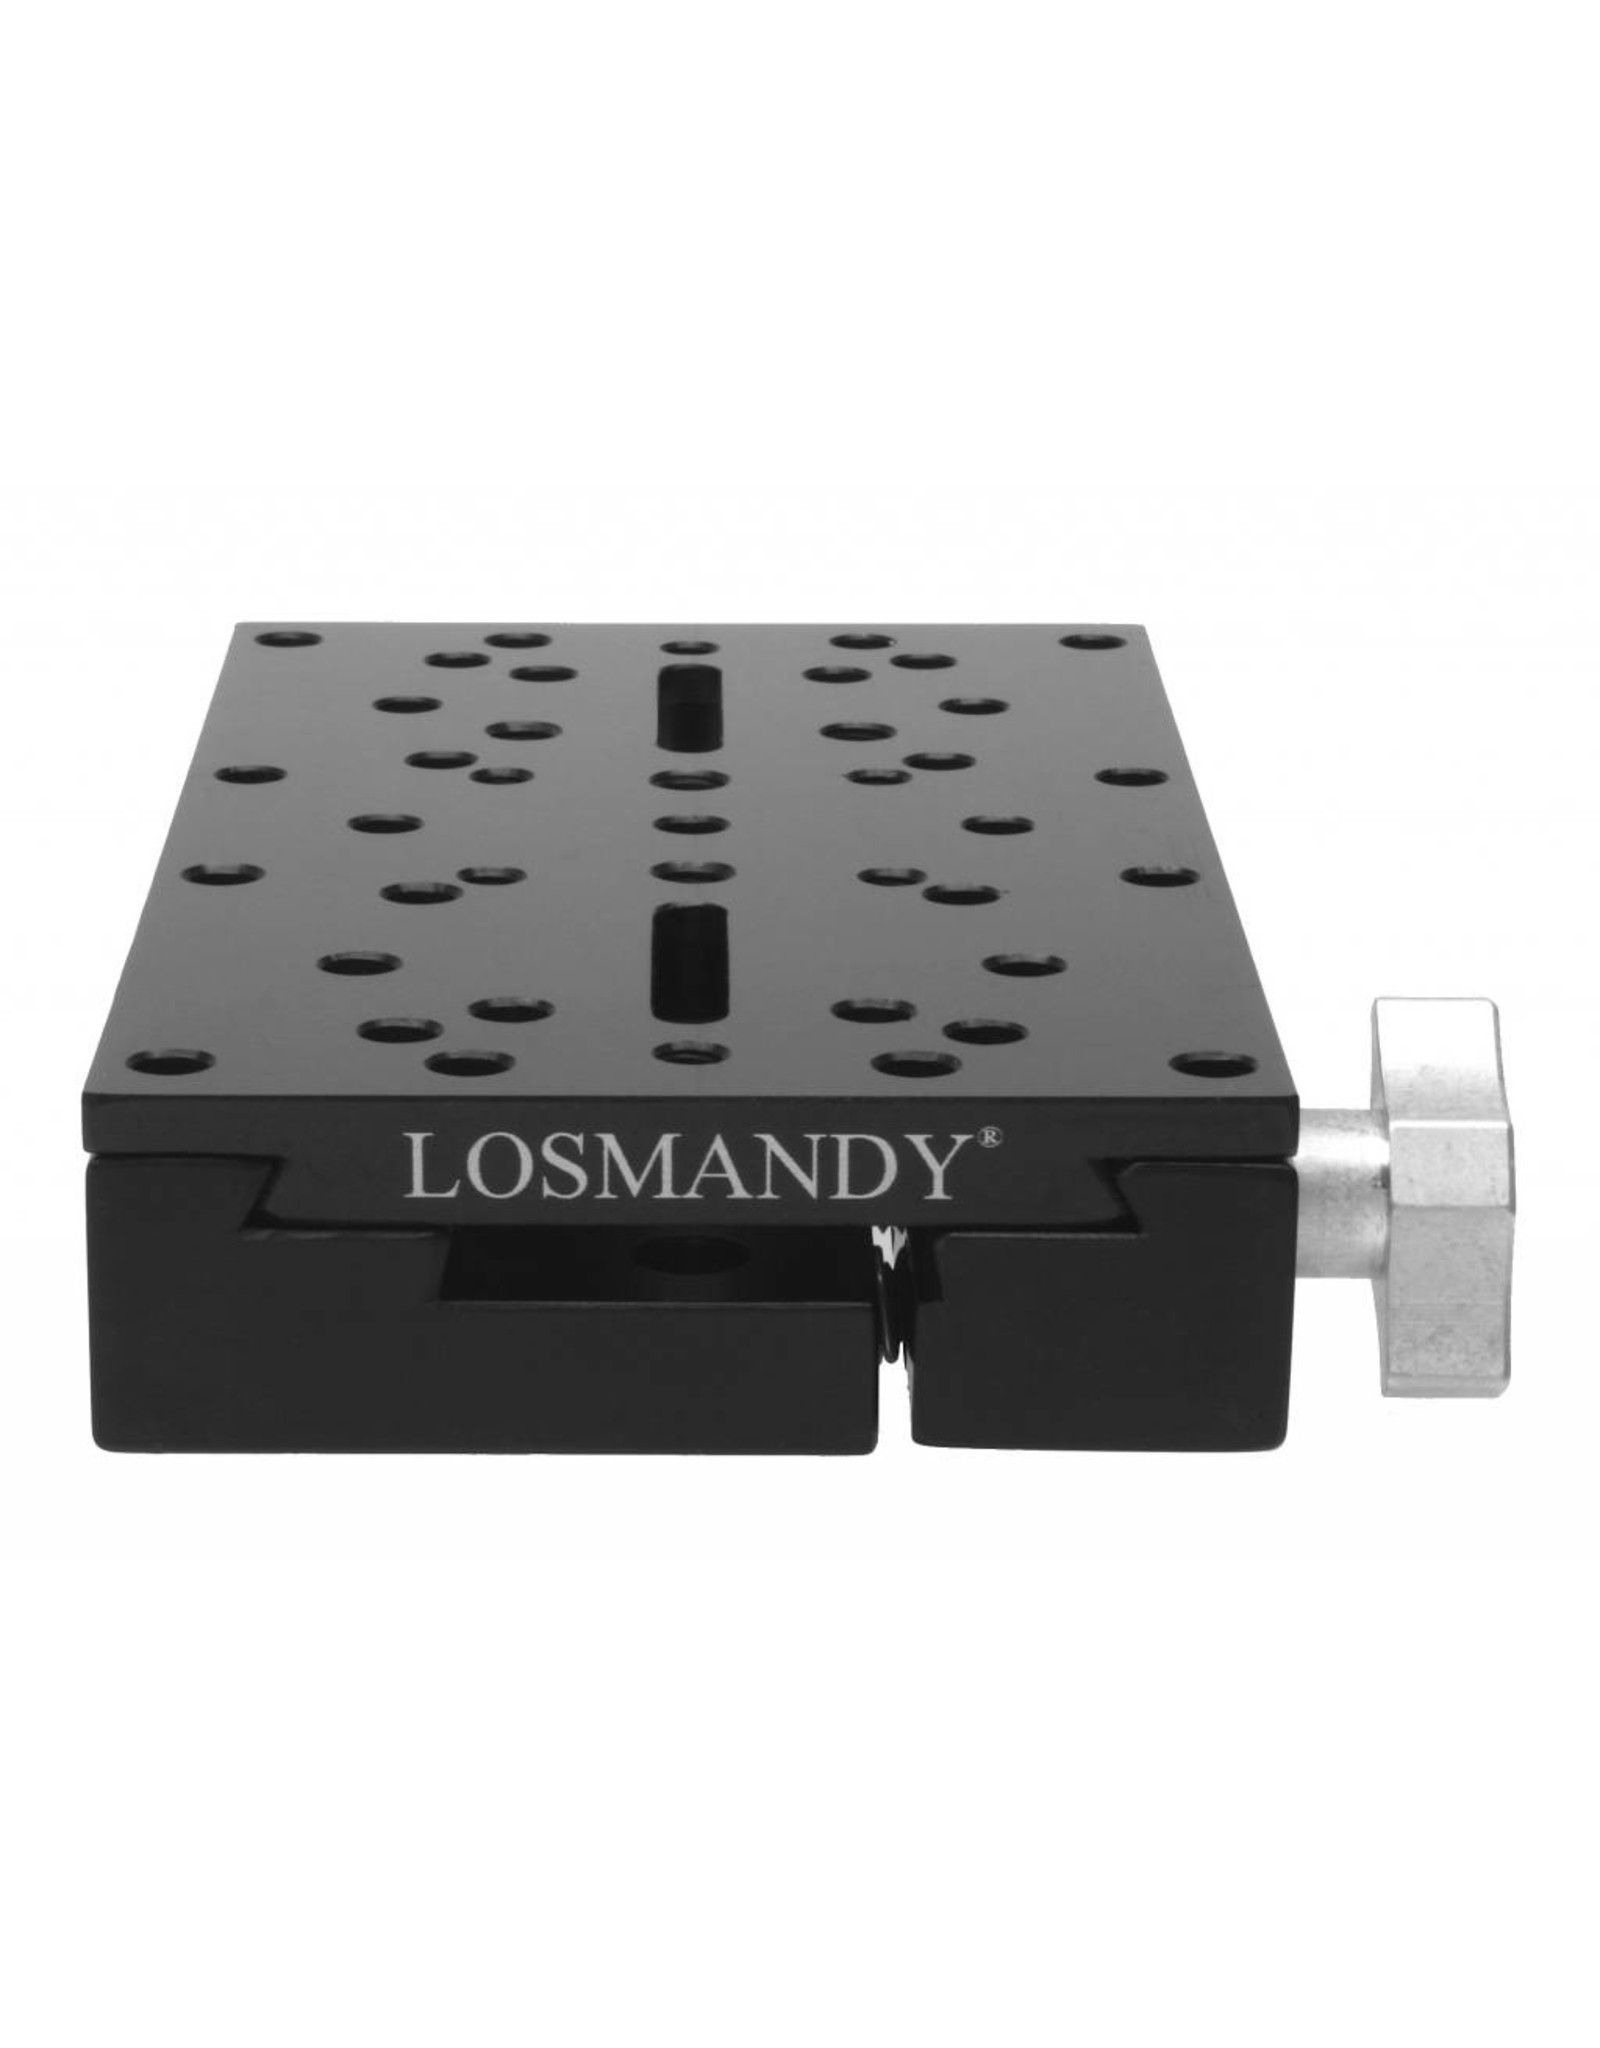 Losmandy Losmandy Saddle Plate for GM 8, G-11 and Takahashi mounts